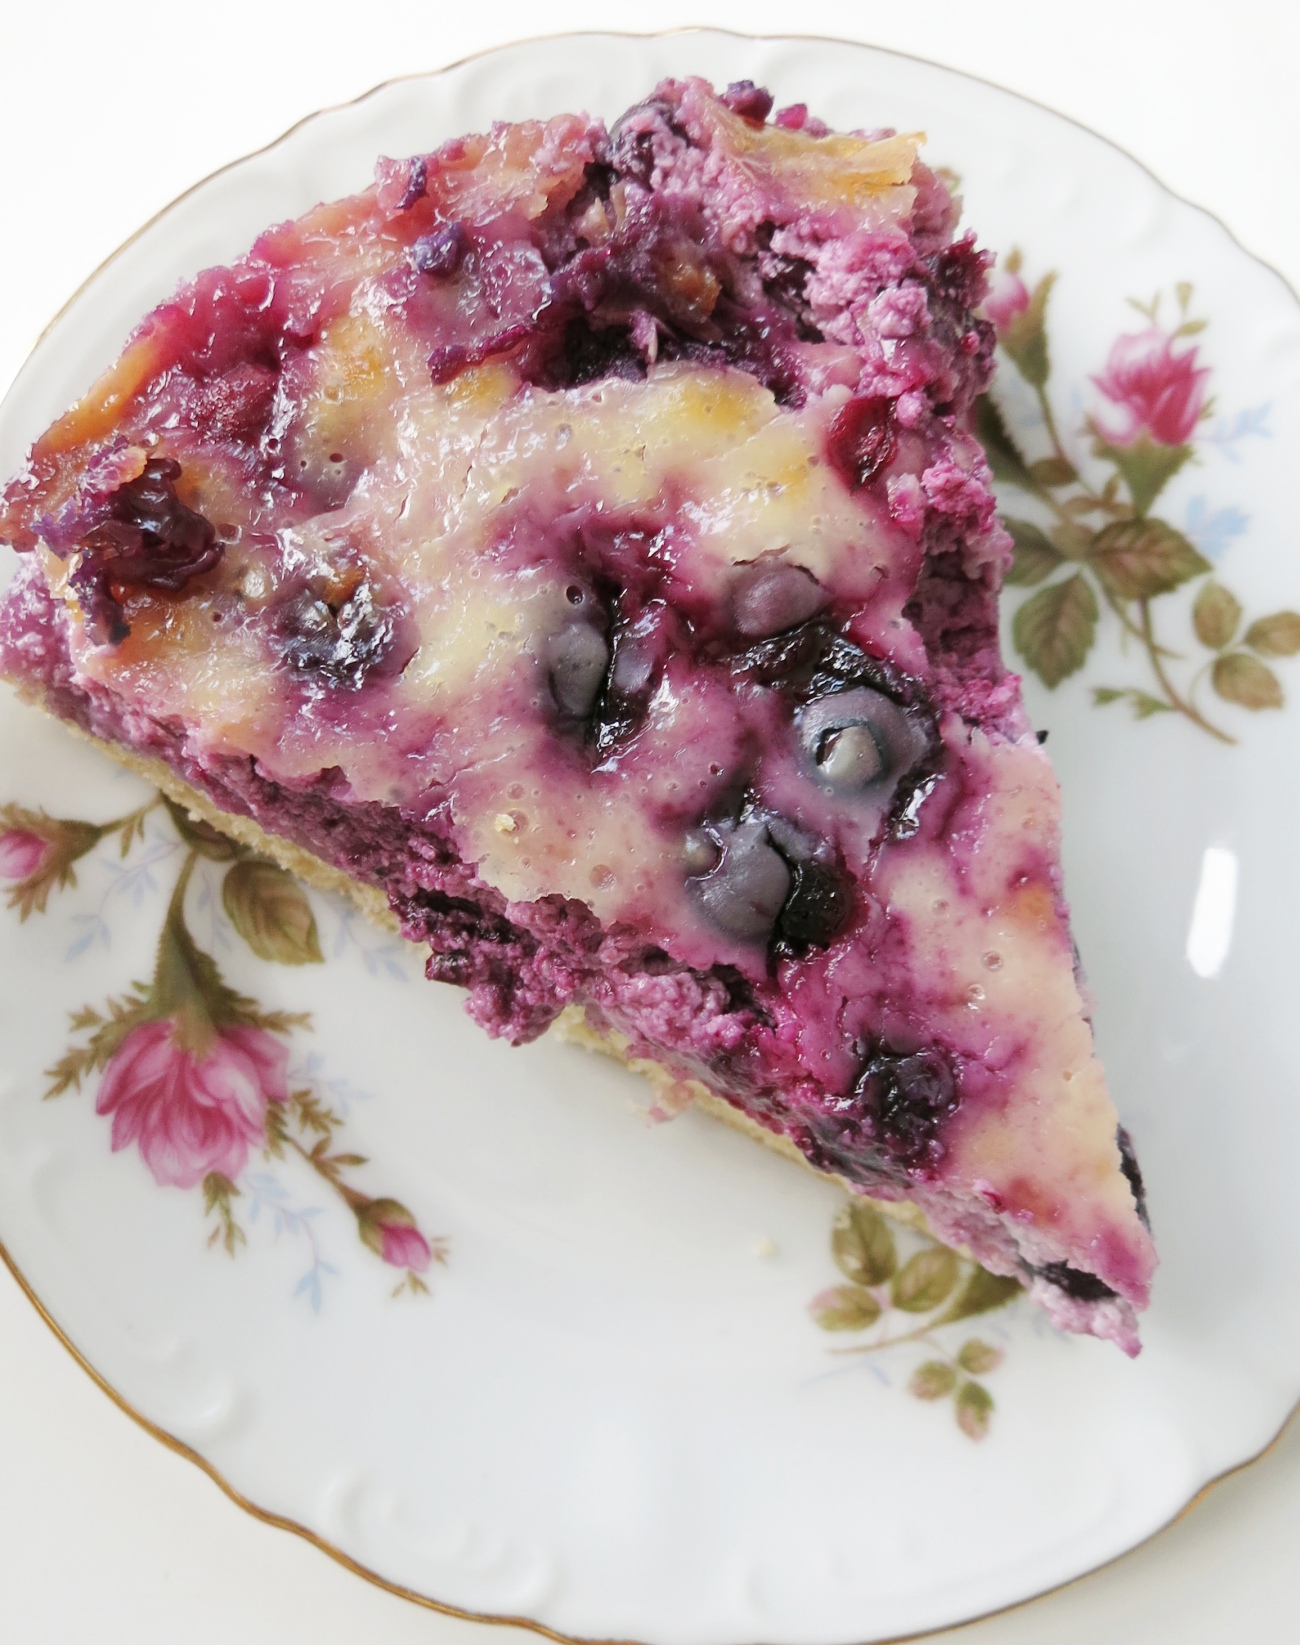 Nova Scotia Blueberry Cream Cake
